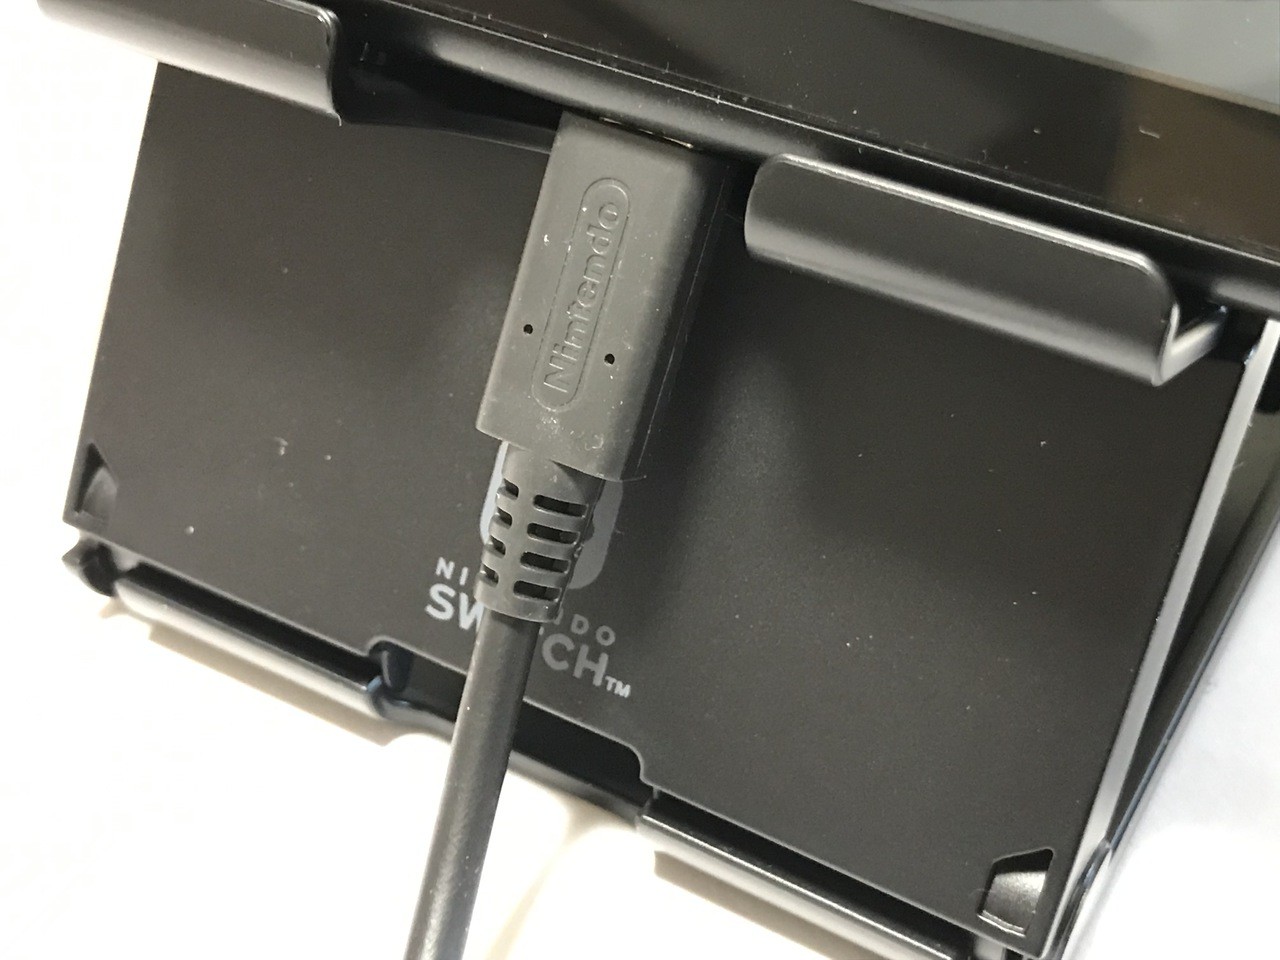 テーブルモードで便利なホリの プレイスタンド For Nintendo Switch を購入 ソフトアンテナブログ